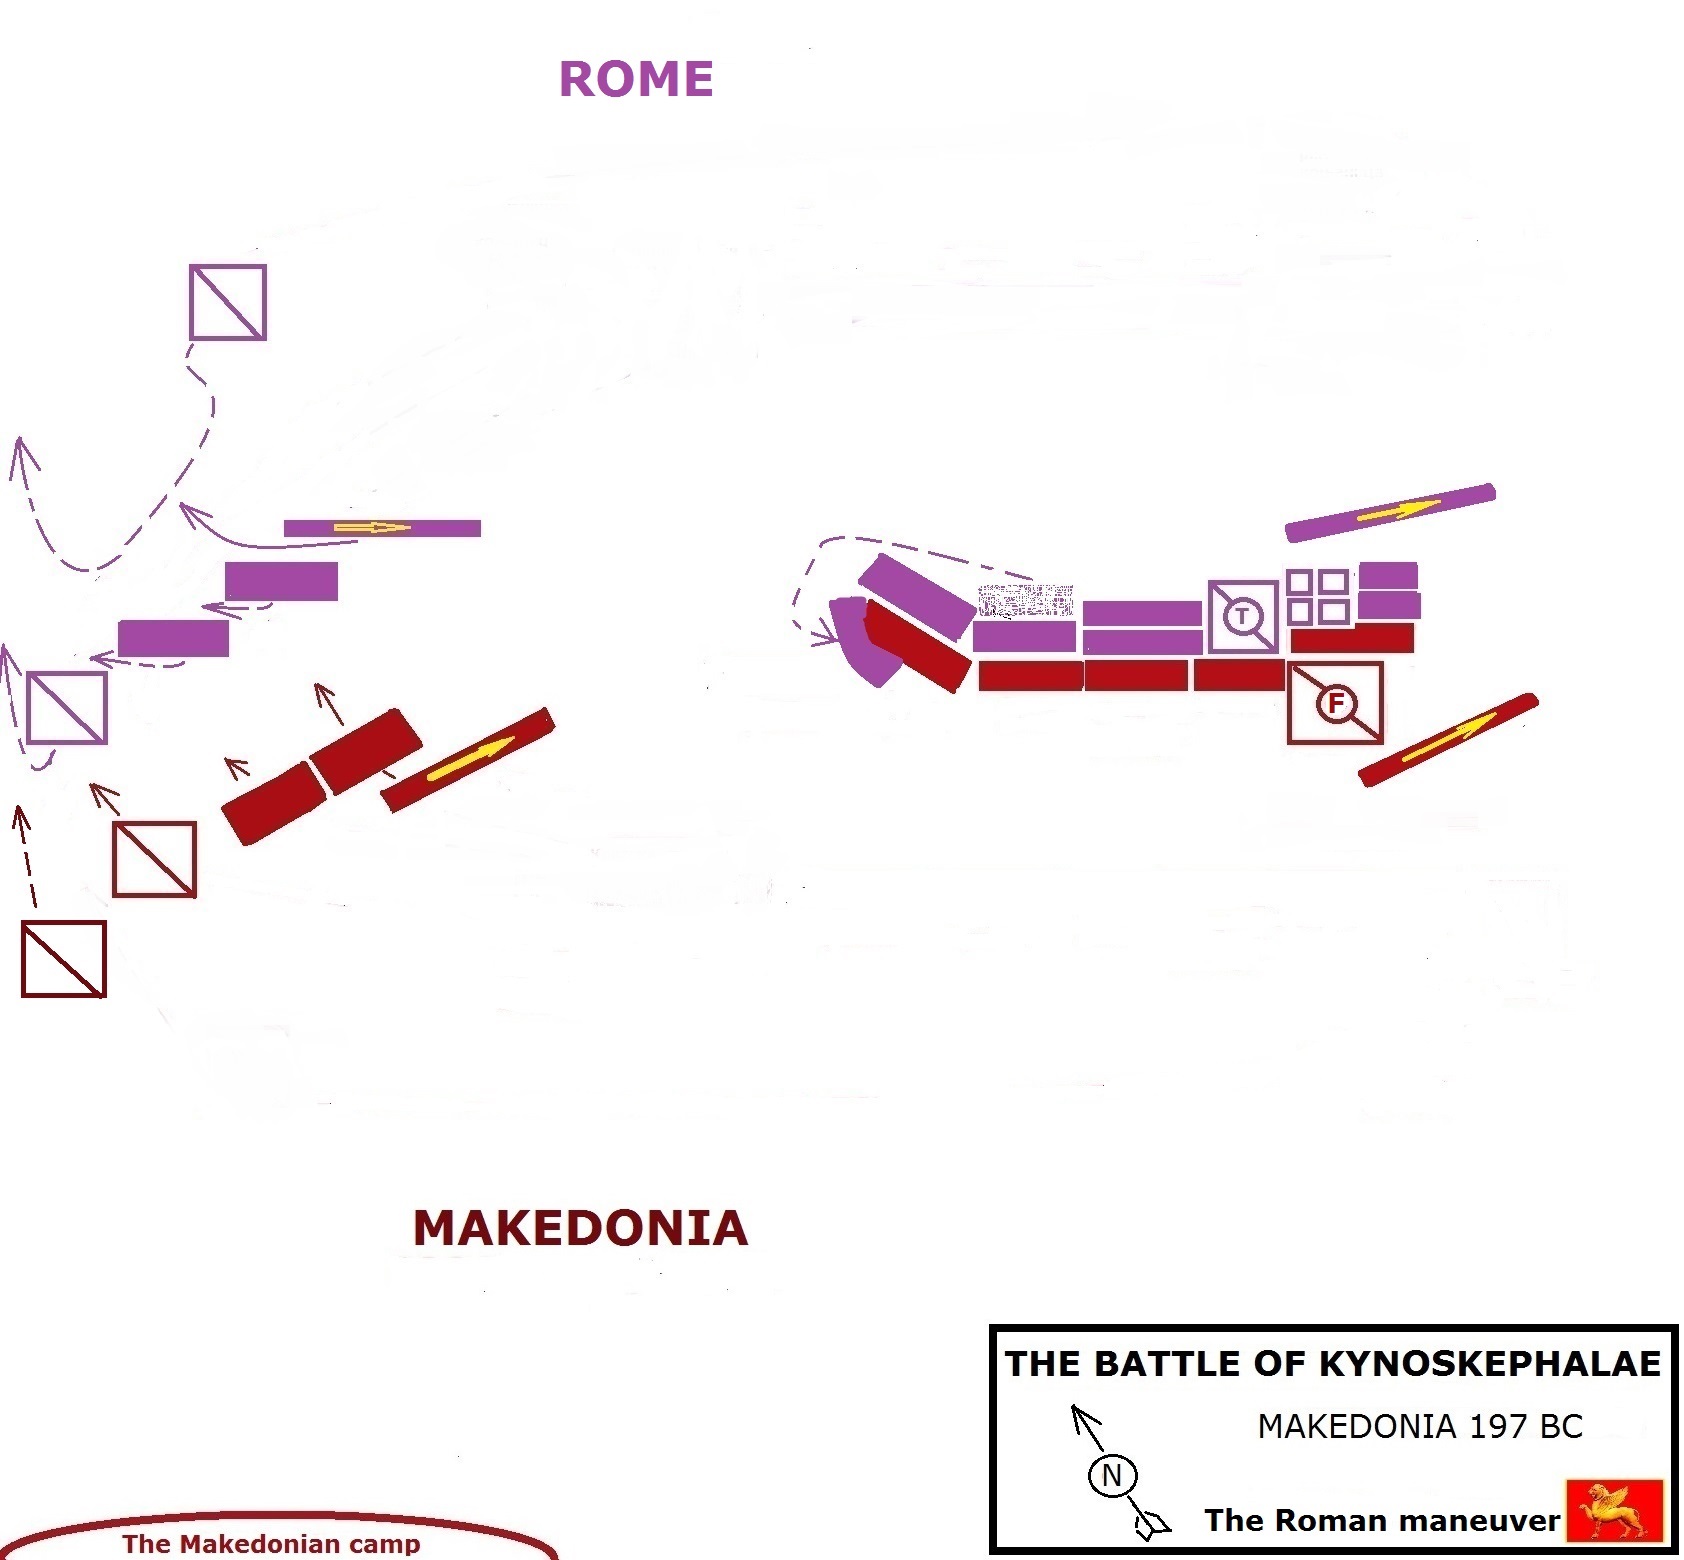 THE BATTLE OF KYNOSKEPHALAE - MAKEDONIA 197 BC